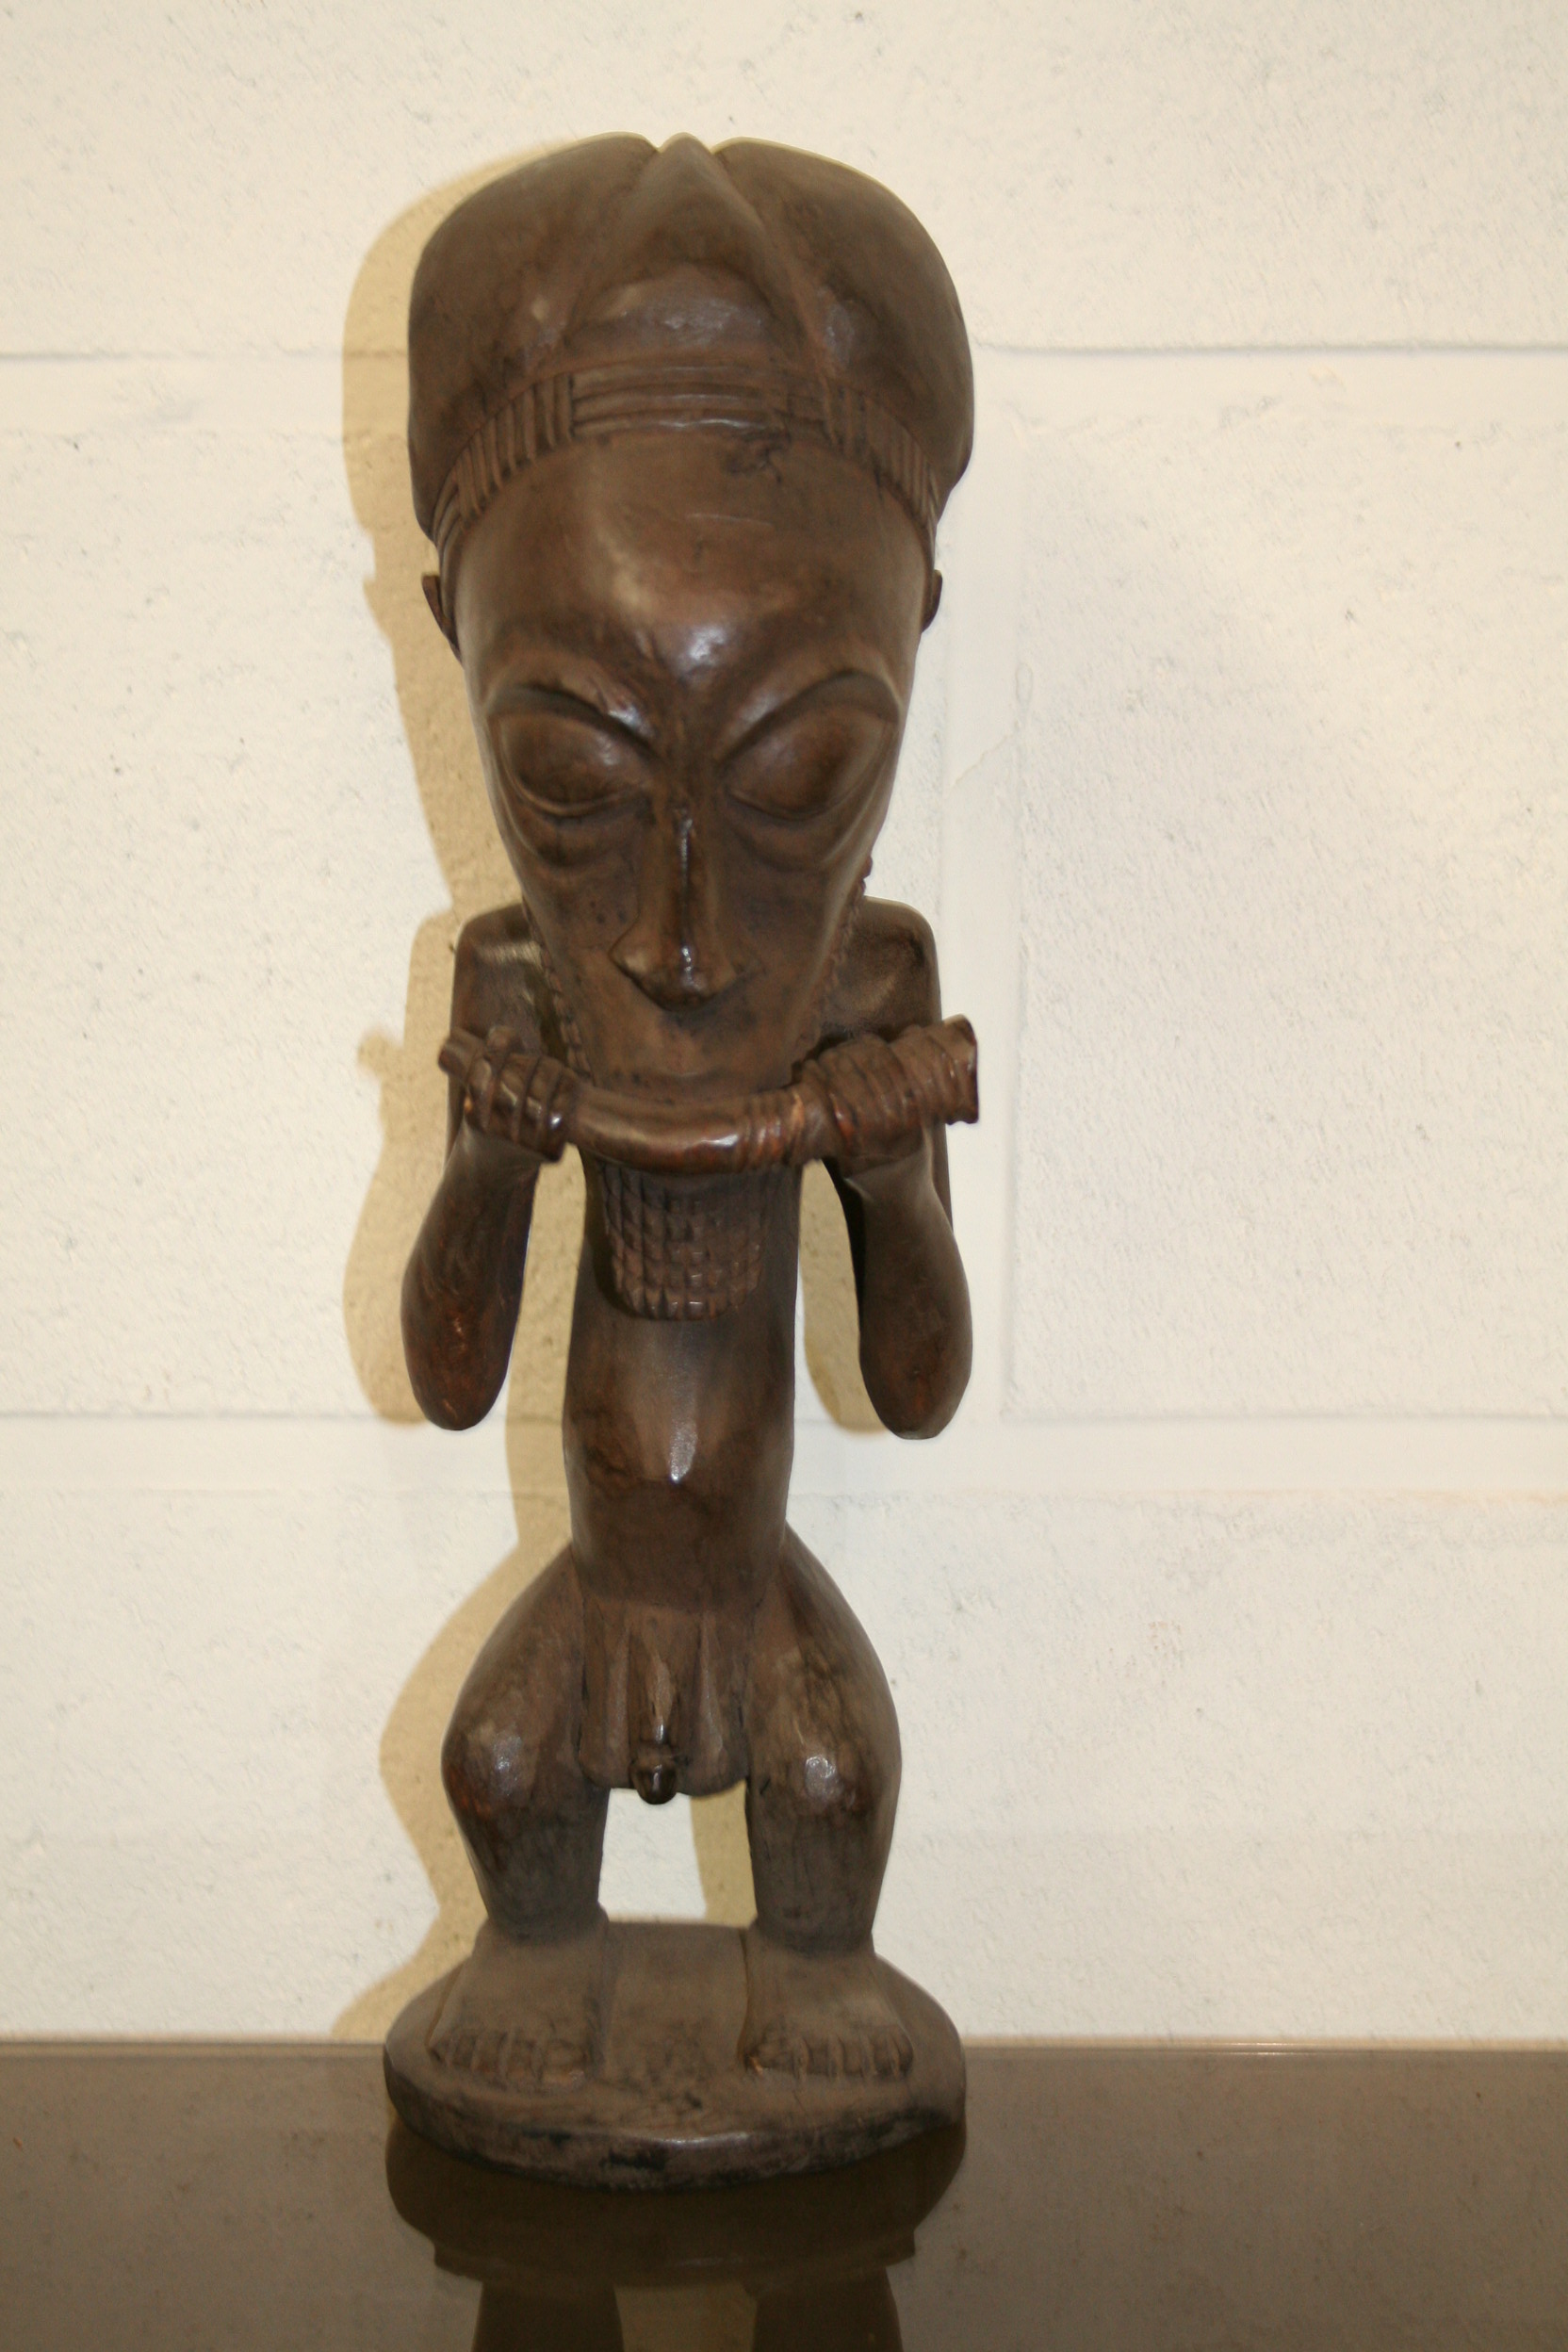 luba(statue musicien), d`afrique : R.d. du Congo, statuette luba(statue musicien), masque ancien africain luba(statue musicien), art du R.d. du Congo - Art Africain, collection privées Belgique. Statue africaine de la tribu des luba(statue musicien), provenant du R.d. du Congo, 1643:Statuette d